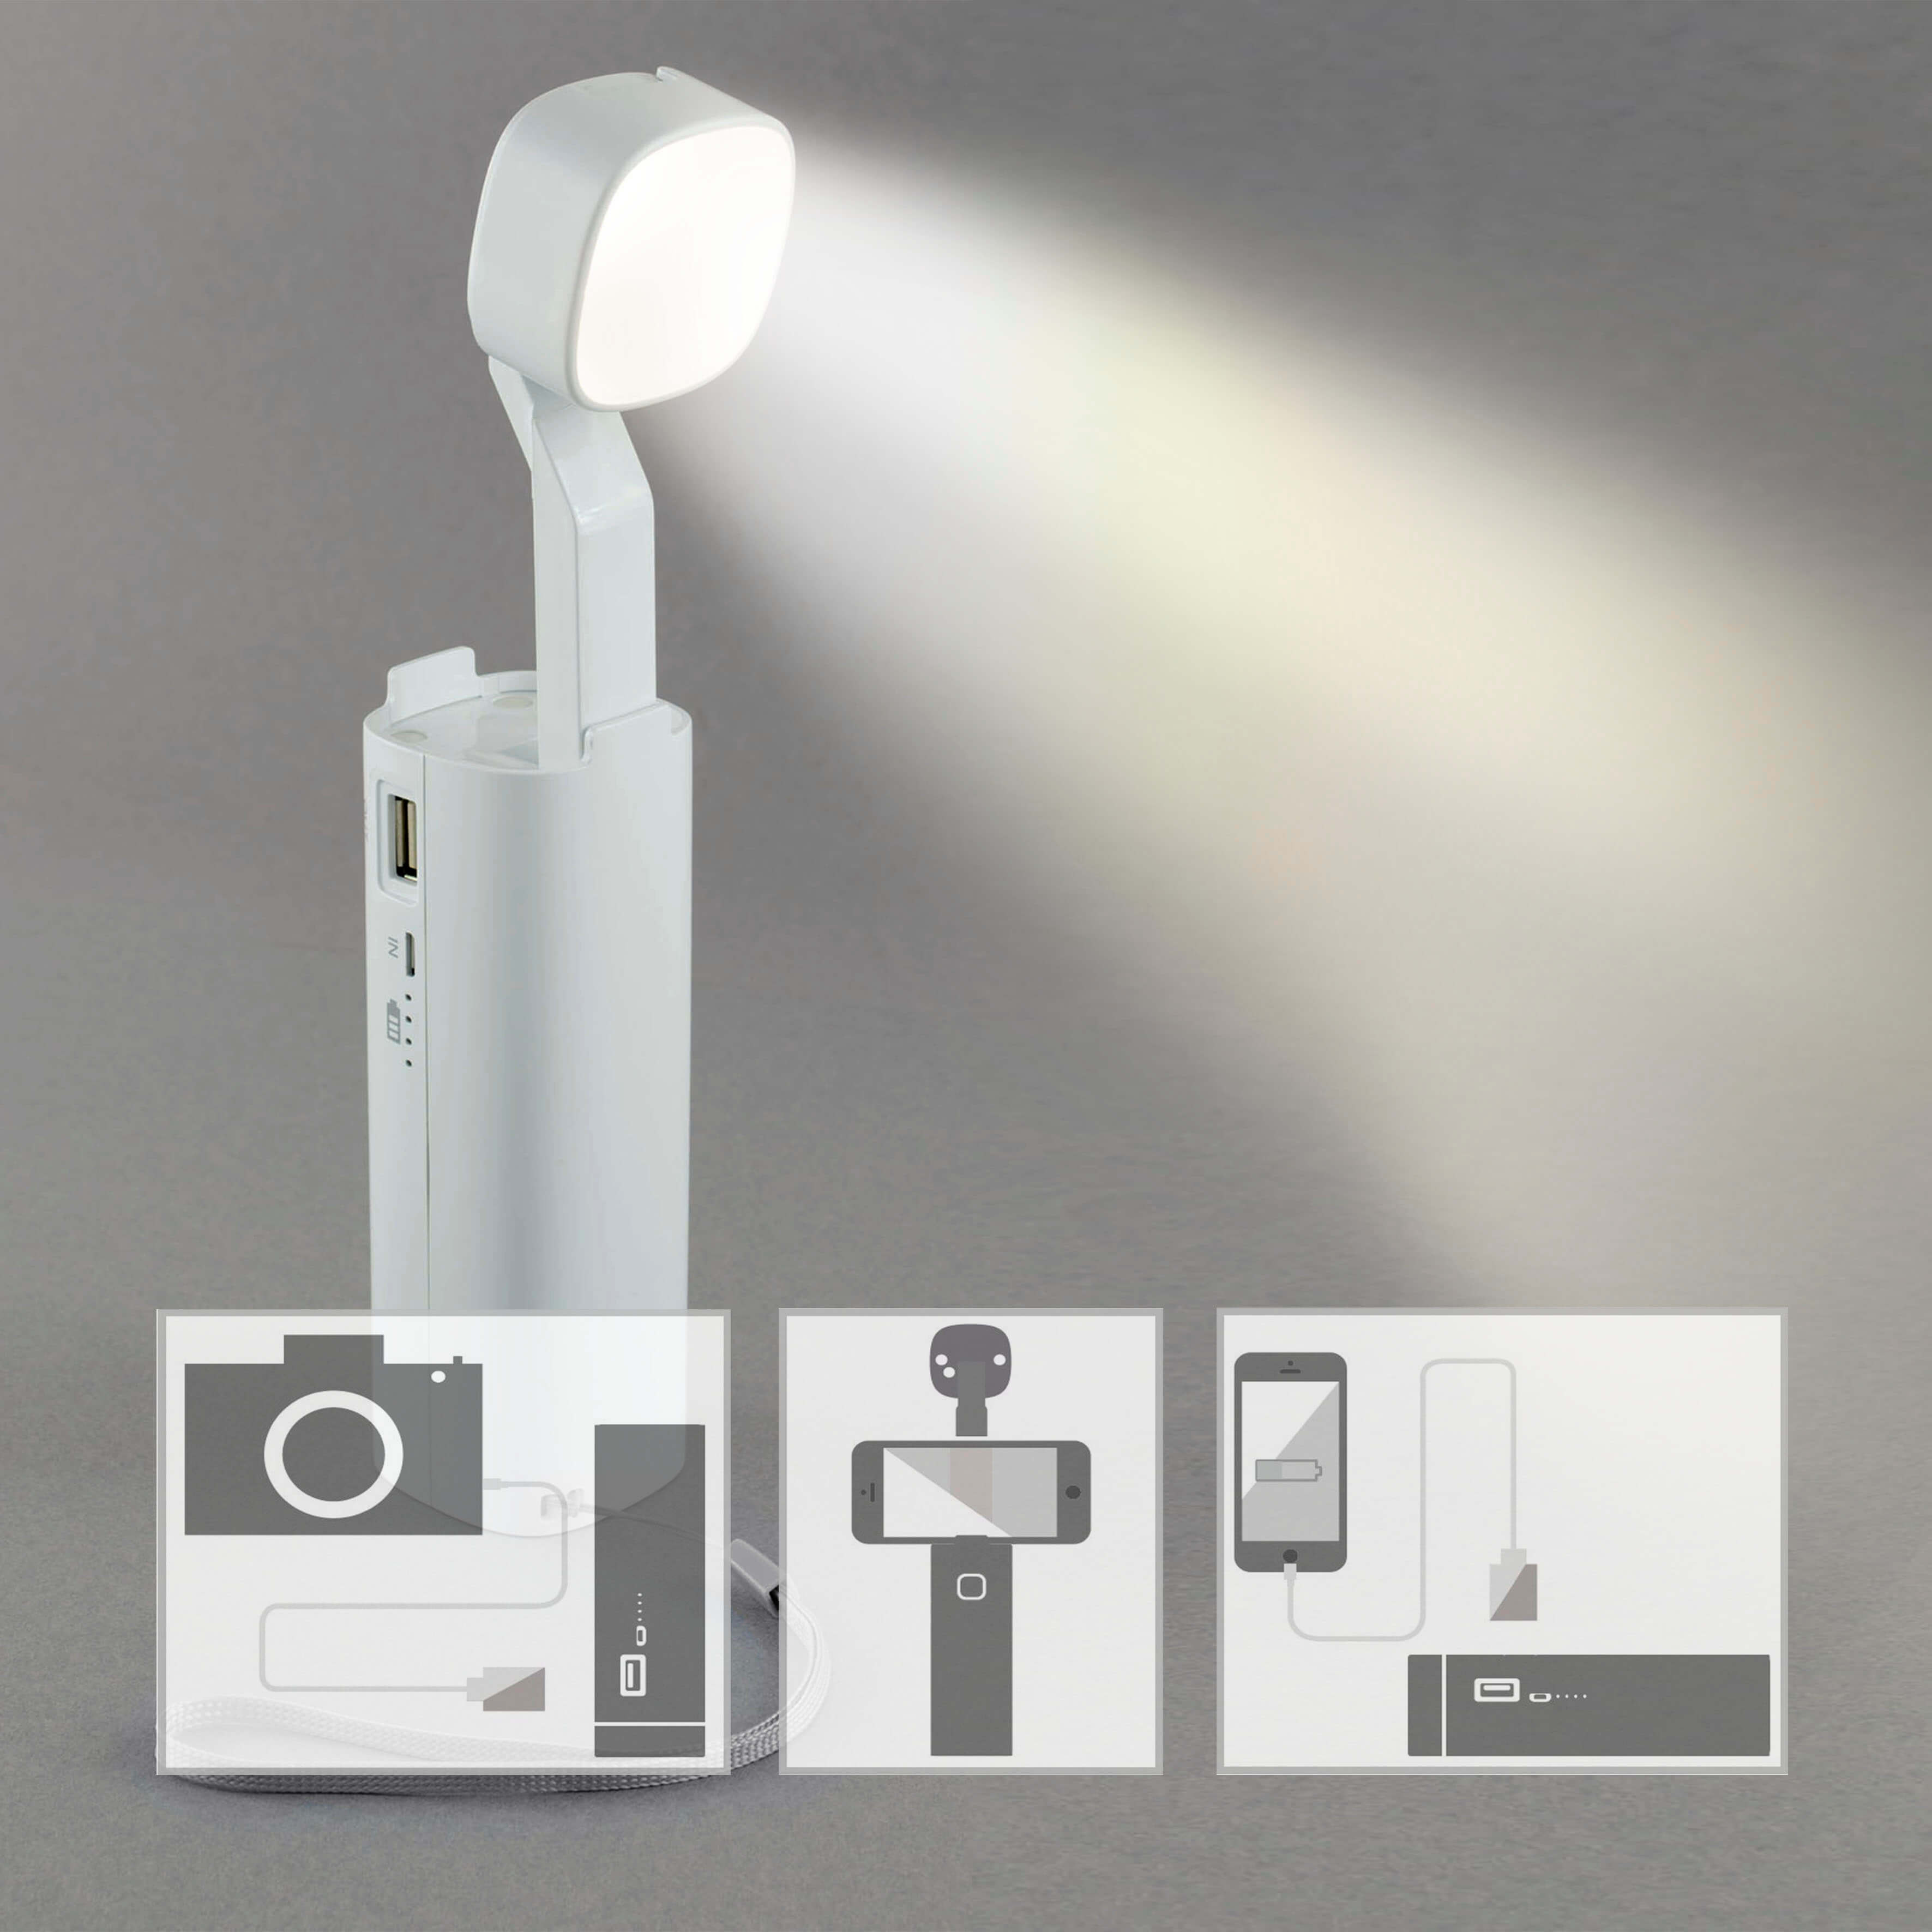 X4-LIFE LED Taschenlampe, Powerbank 3000mAh, Tischleuchte, Leselampe, Handyhalterung, Dimmbar, USB-Ausgang, USB-C-Eingang, 3 Watt